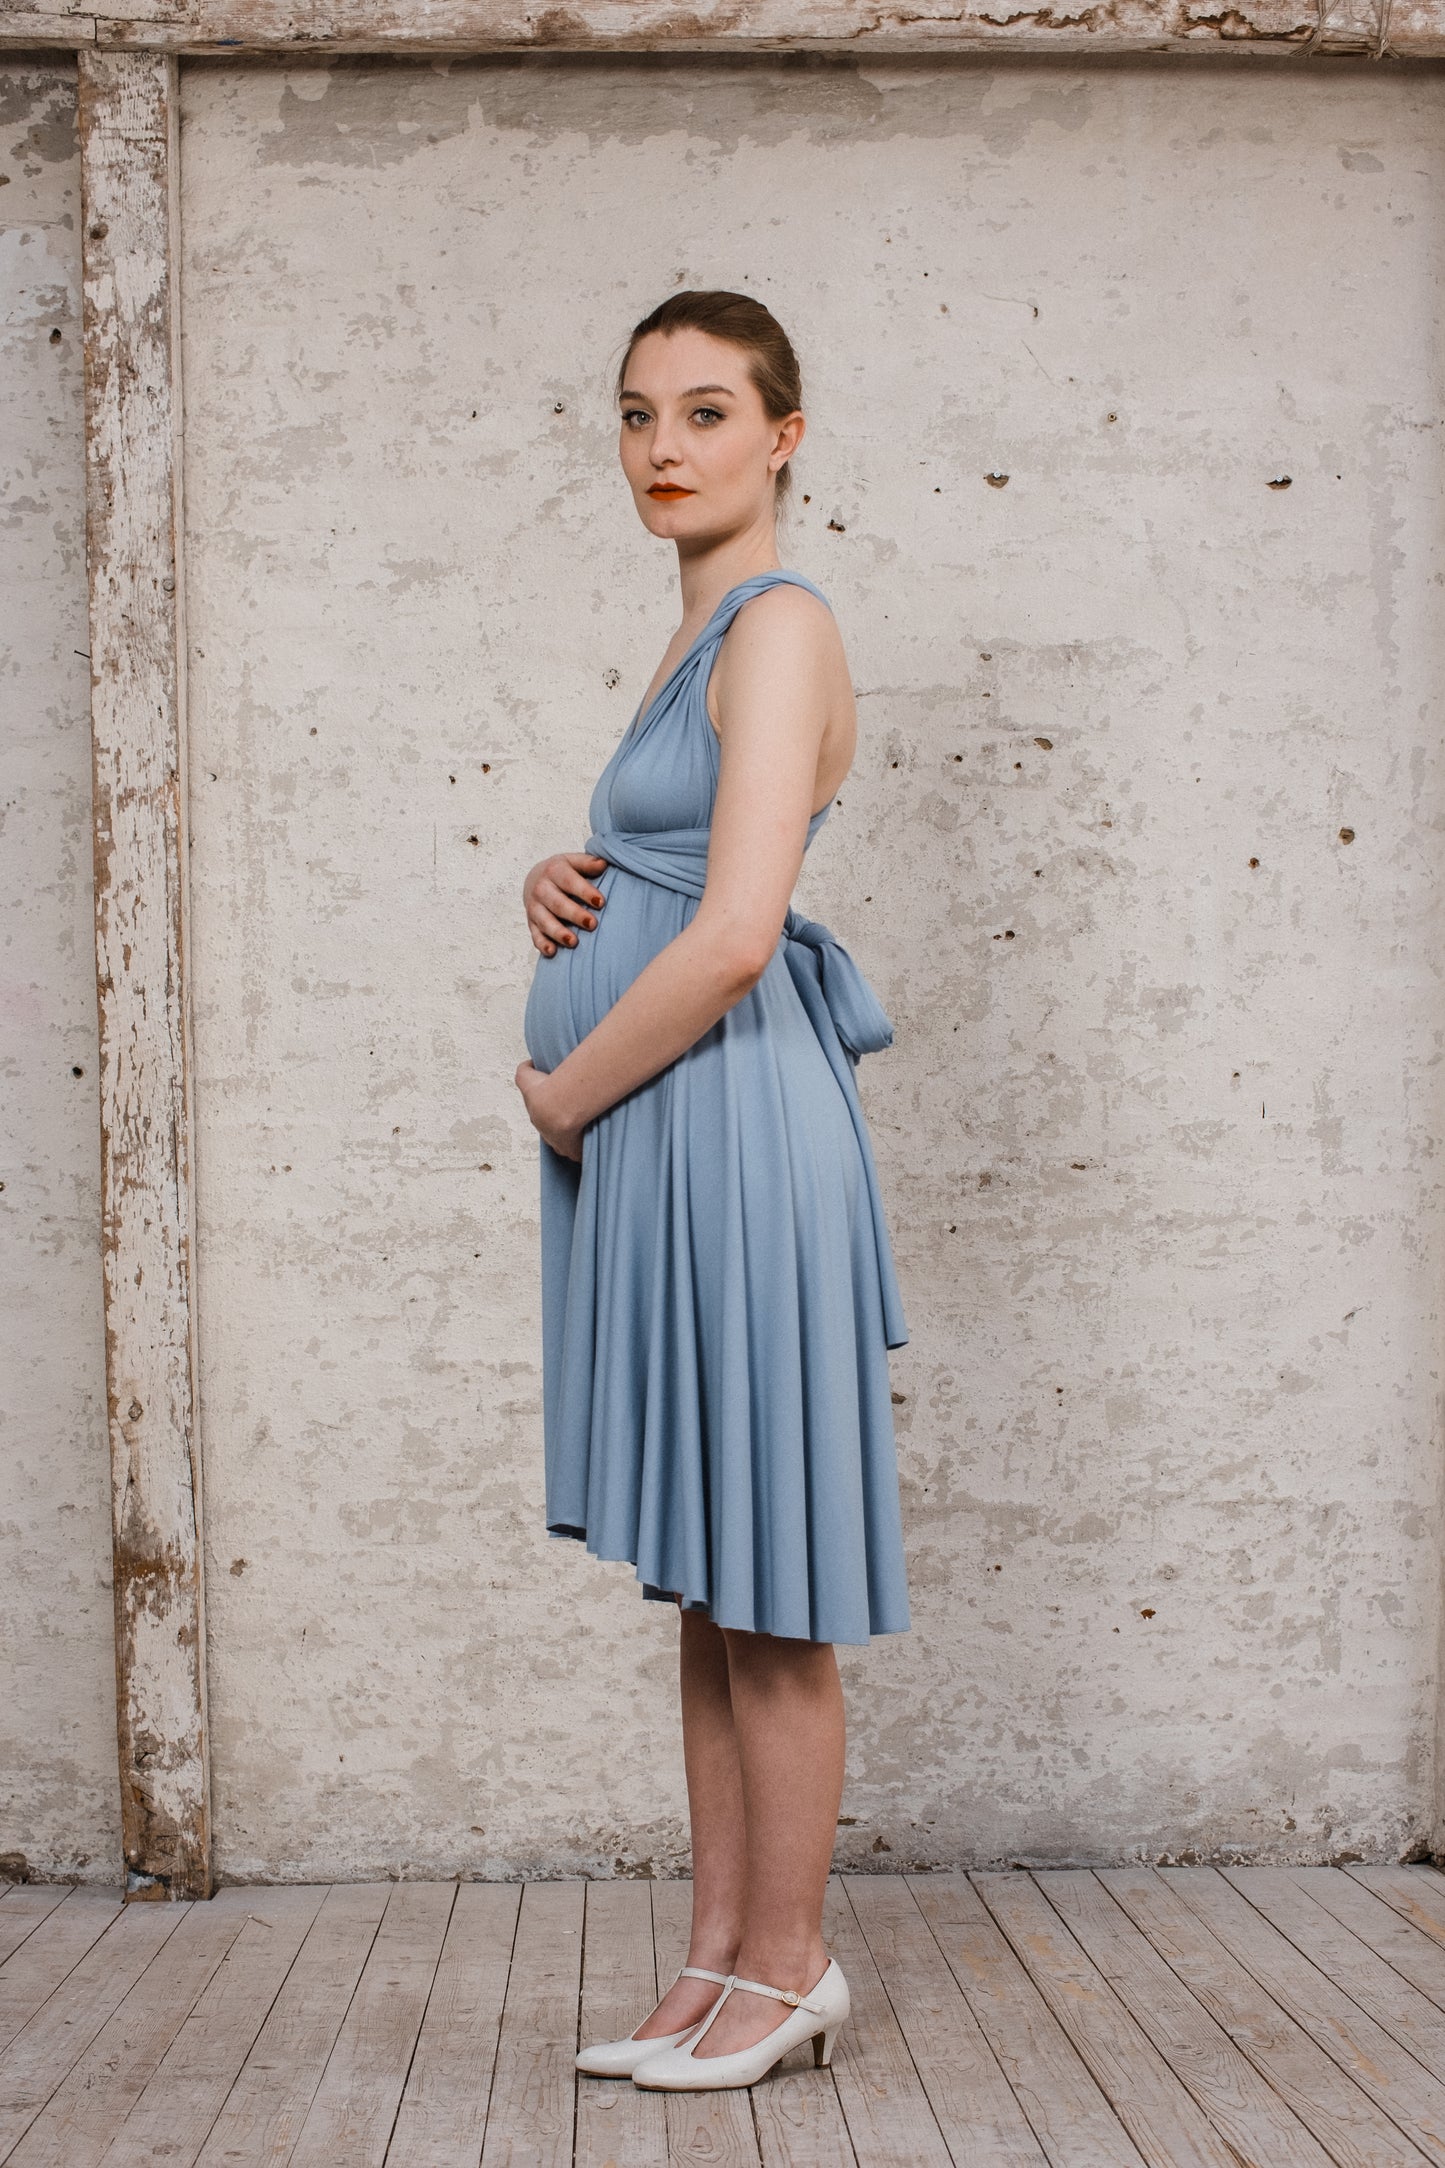 Infintiy Dress "Primrose" kurzes Multitie-Kleid in Silberblau